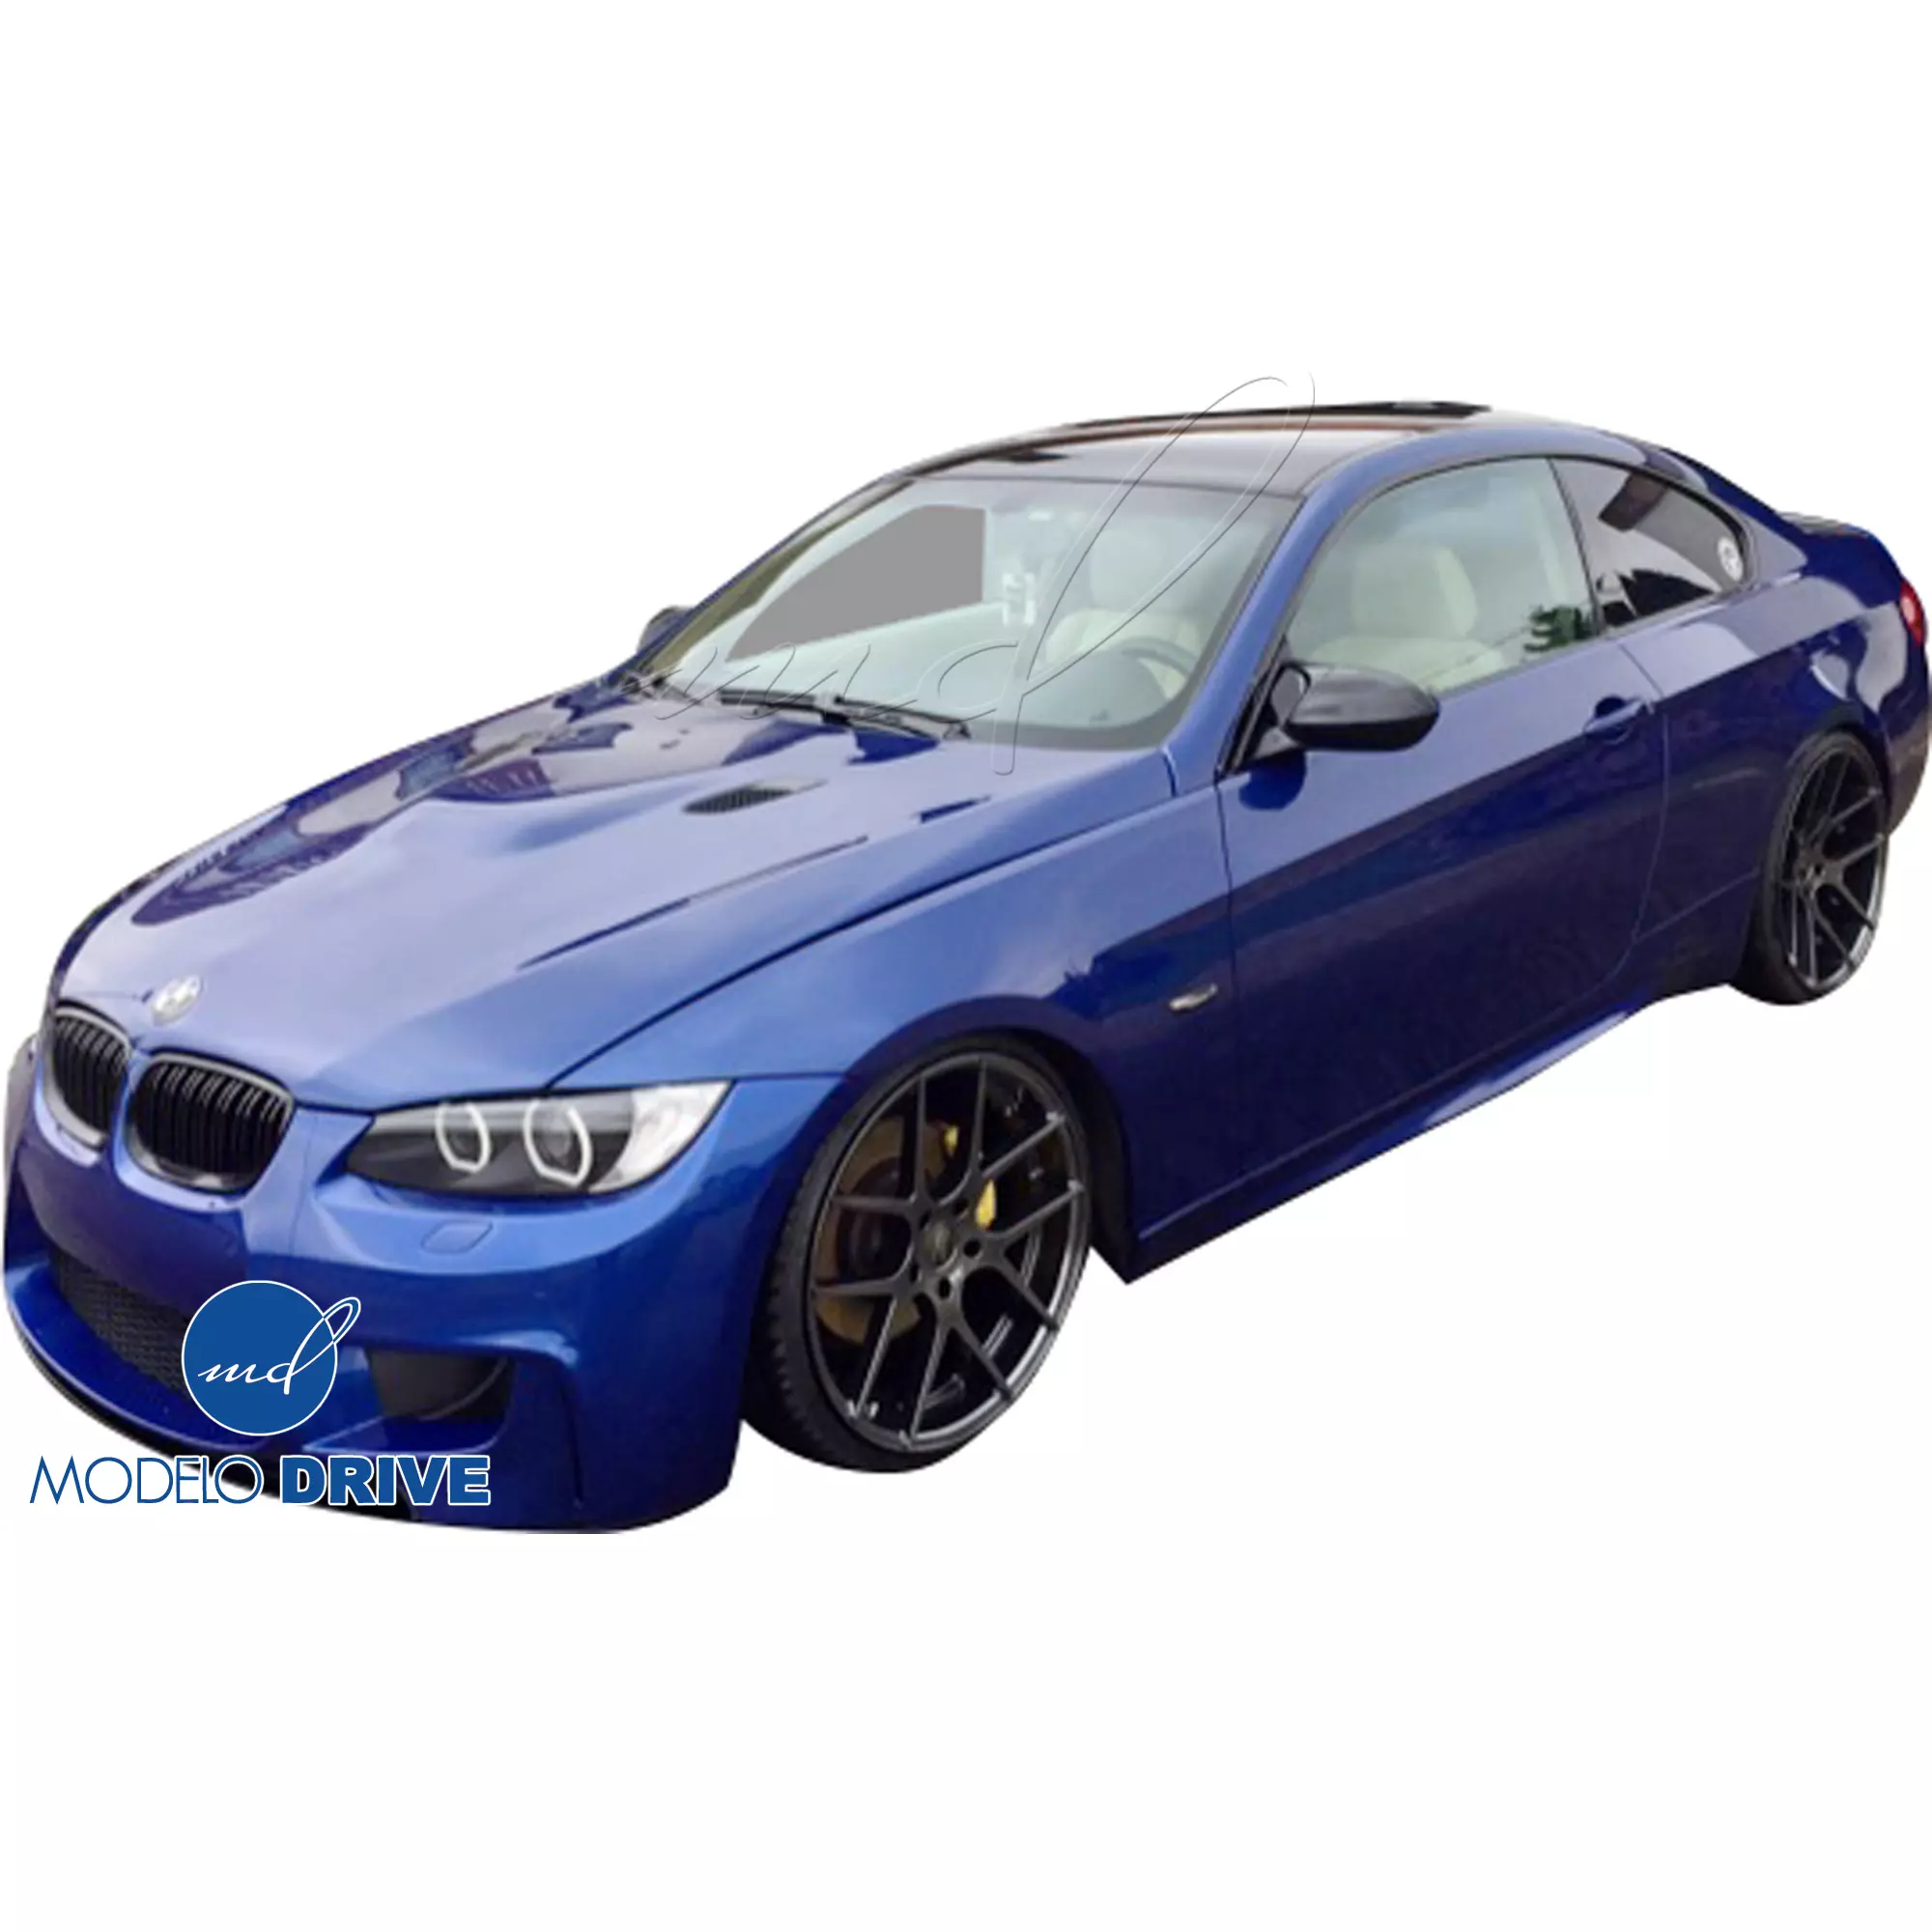 ModeloDrive FRP 1M-Style Body Kit 4pc > BMW 3-Series E92 2007-2010 > 2dr - Image 9